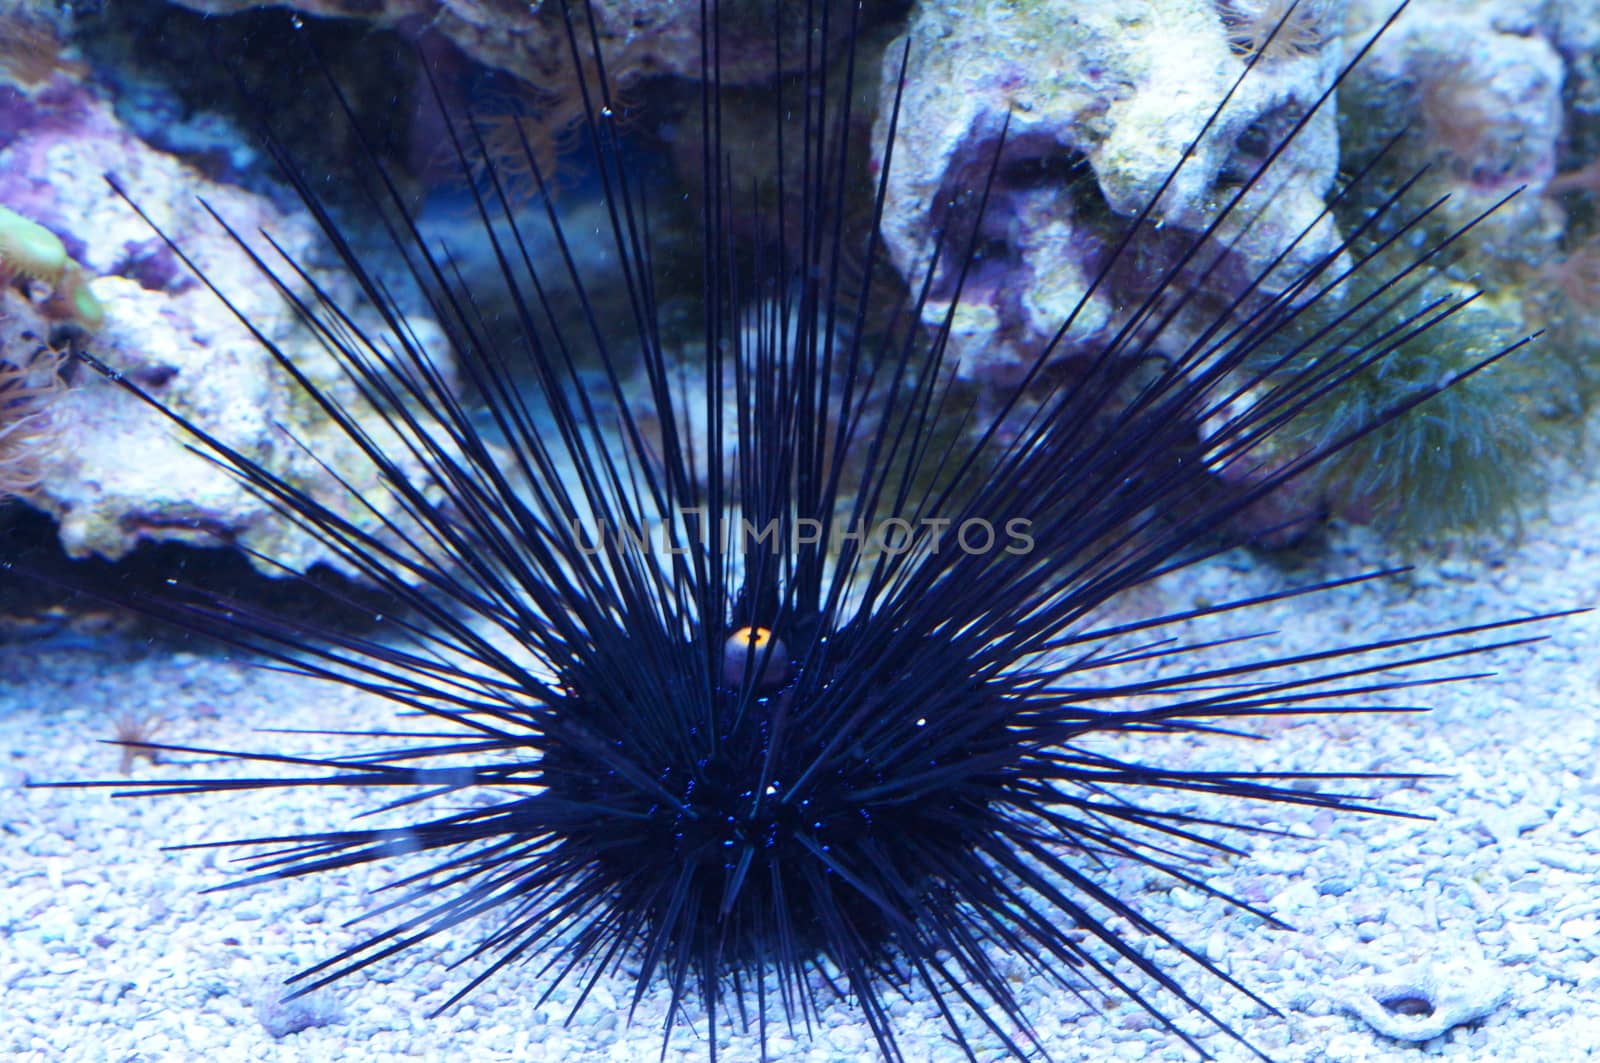 Urchin underwater